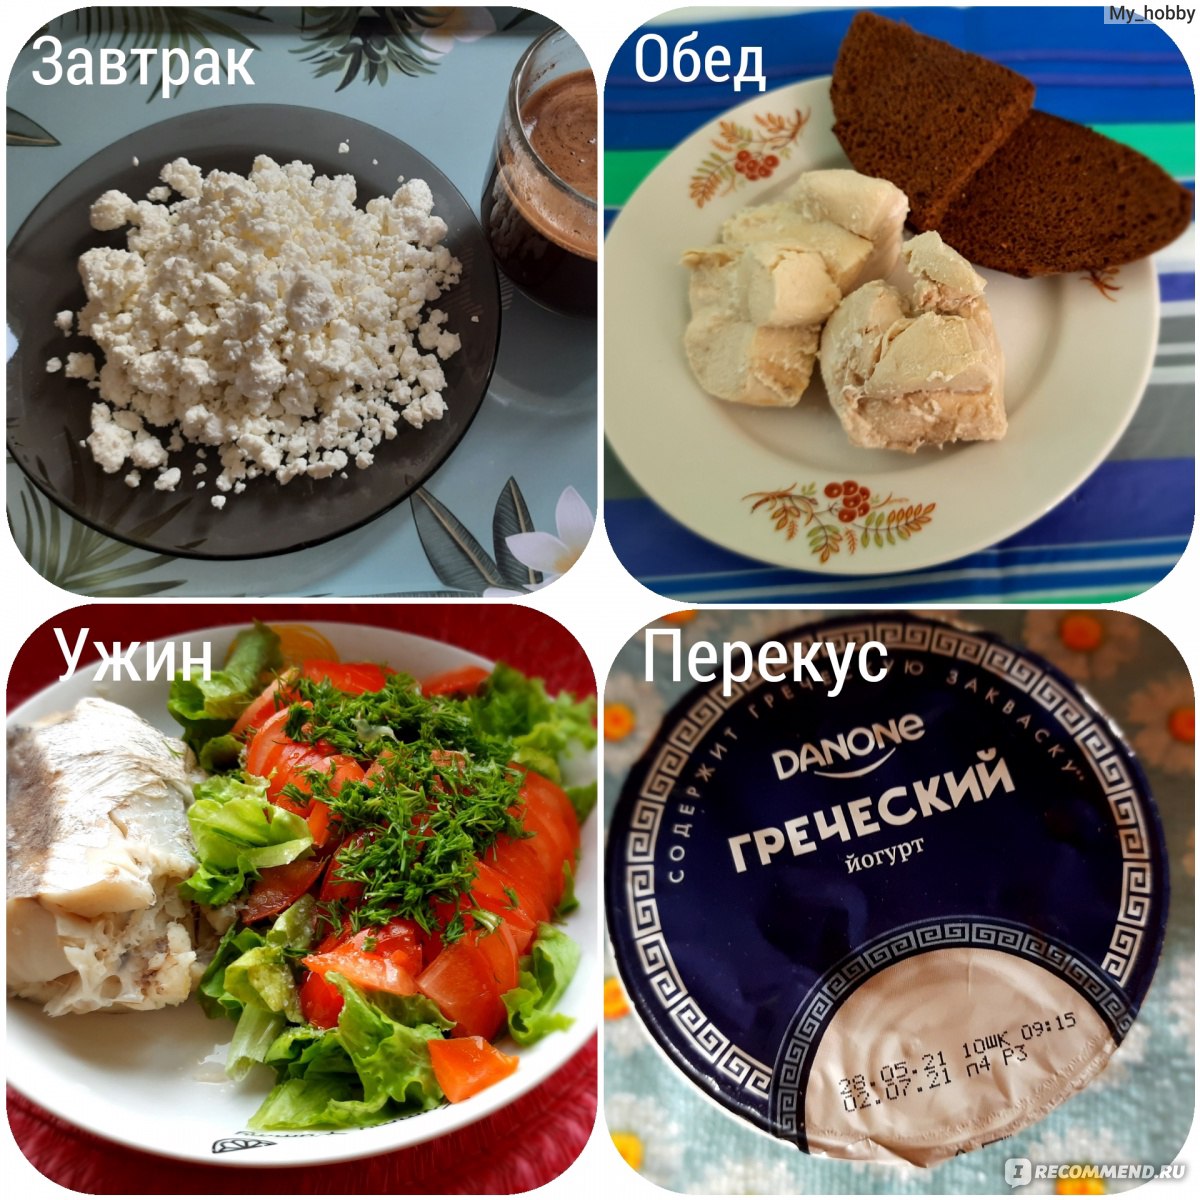 Белковая диета для похудения: меню на каждый день - luchistii-sudak.ru